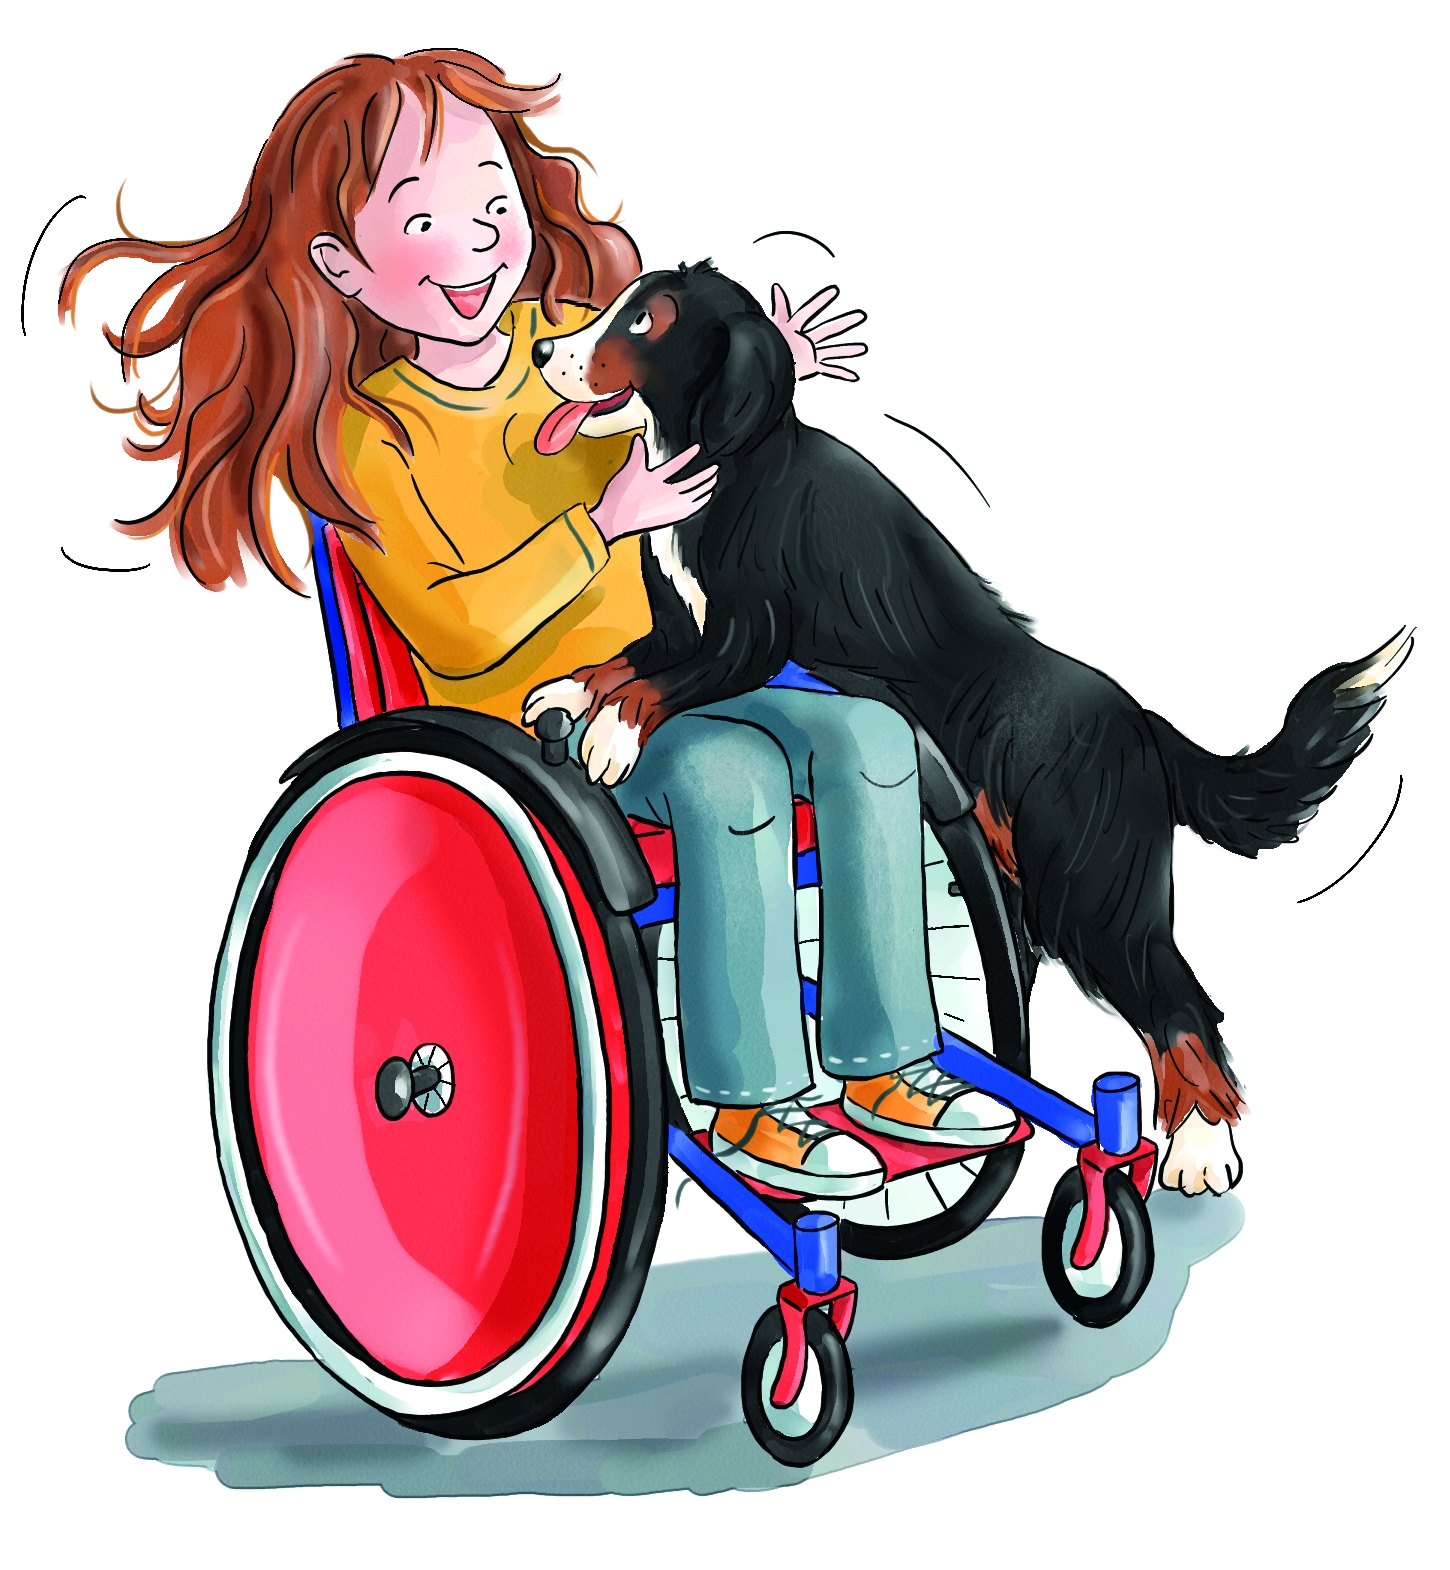 Lotta sitzt im Rollstuhl und wird euphorisch von ihrem Hund Einstein begrüßt.